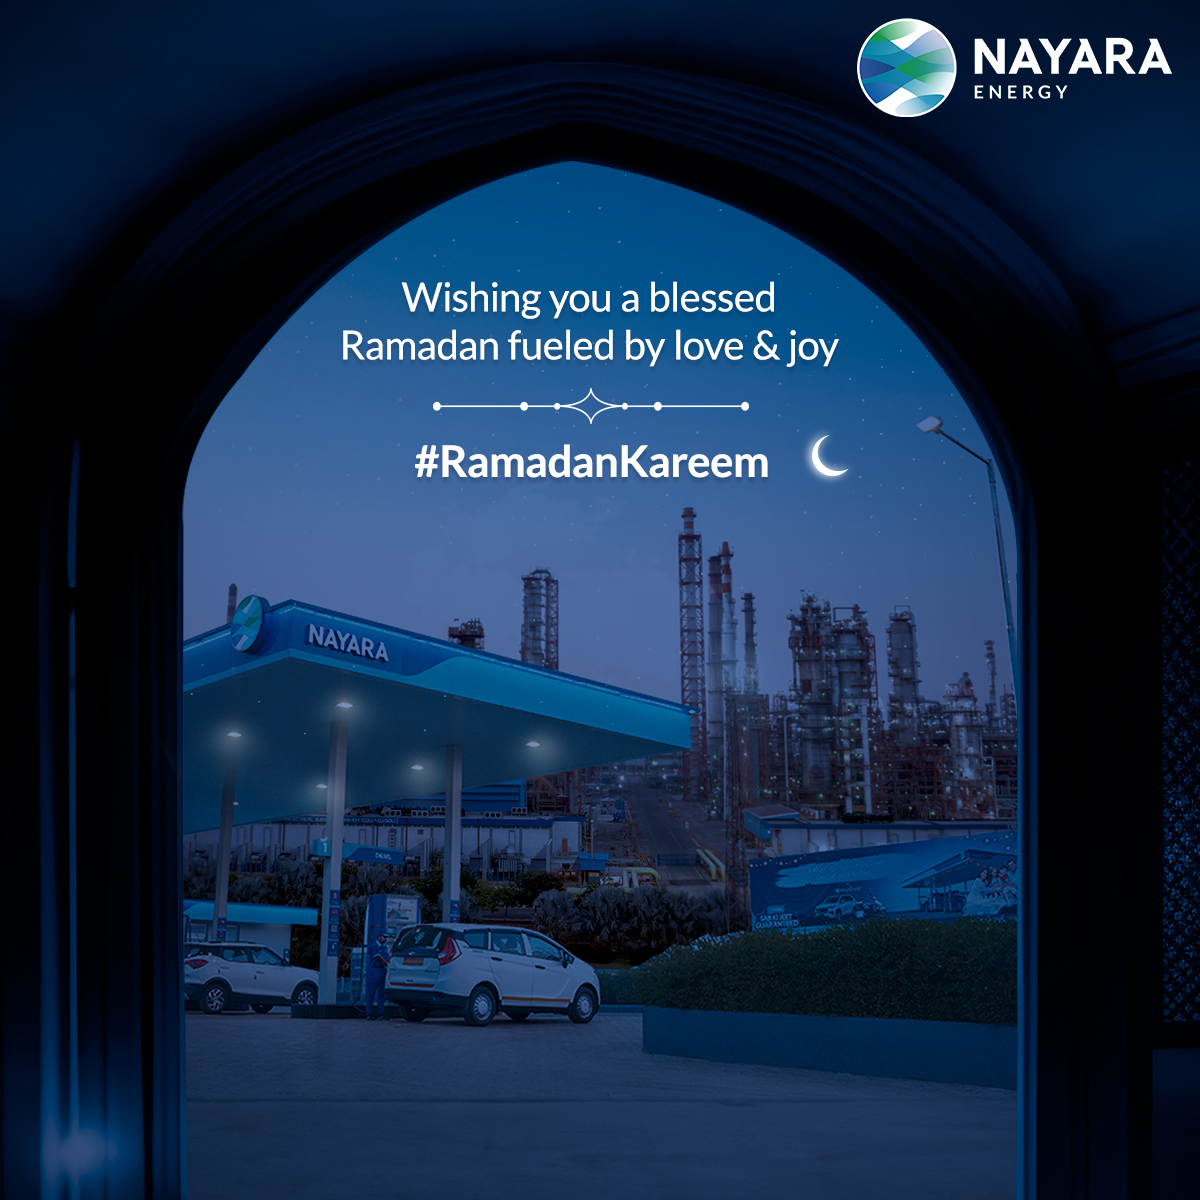 Nayara Energy wishes you a Ramadan filled with kindness, generosity, and gratitude. #RamadanKareem #NayaraEnergy